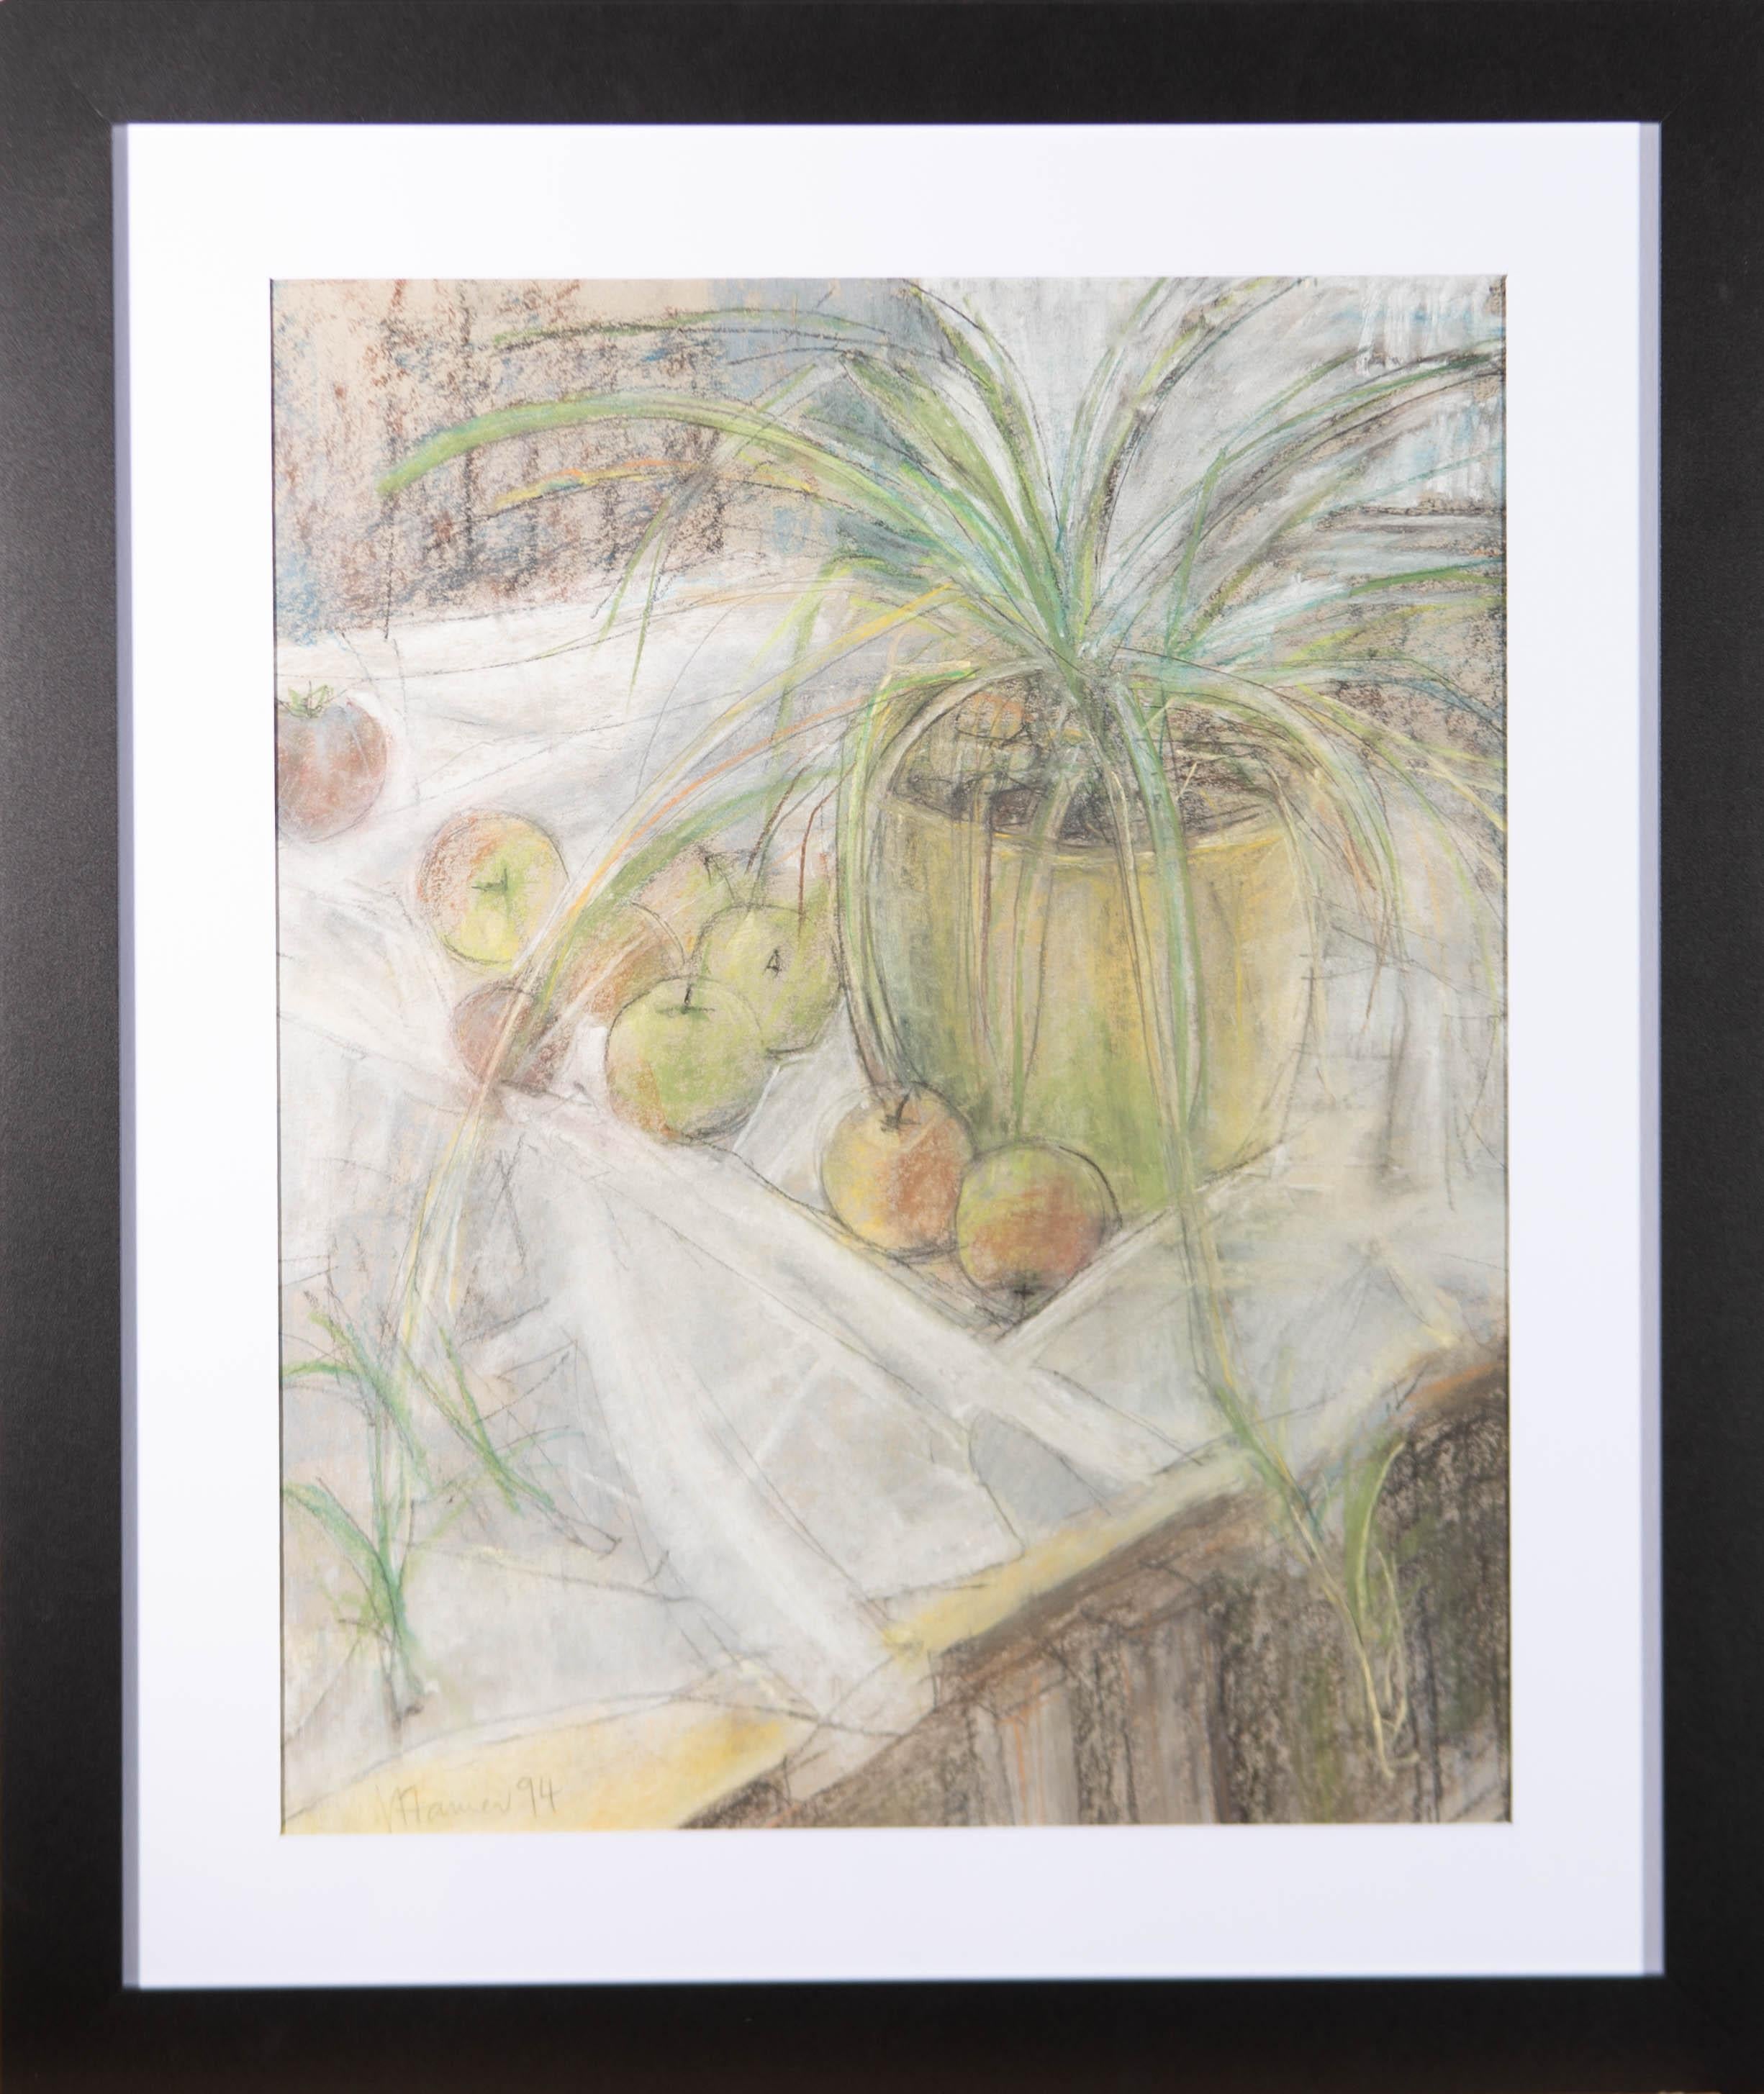 Eine schöne Pastellzeichnung des britischen Künstlers Val Hamer. Die Szene zeigt eine Stilllebenstudie mit einer Topfpflanze und mehreren Äpfeln. Mit groben Strichen gelang es dem Künstler, die einfache, aber charmante Natur dieser Umgebung zum